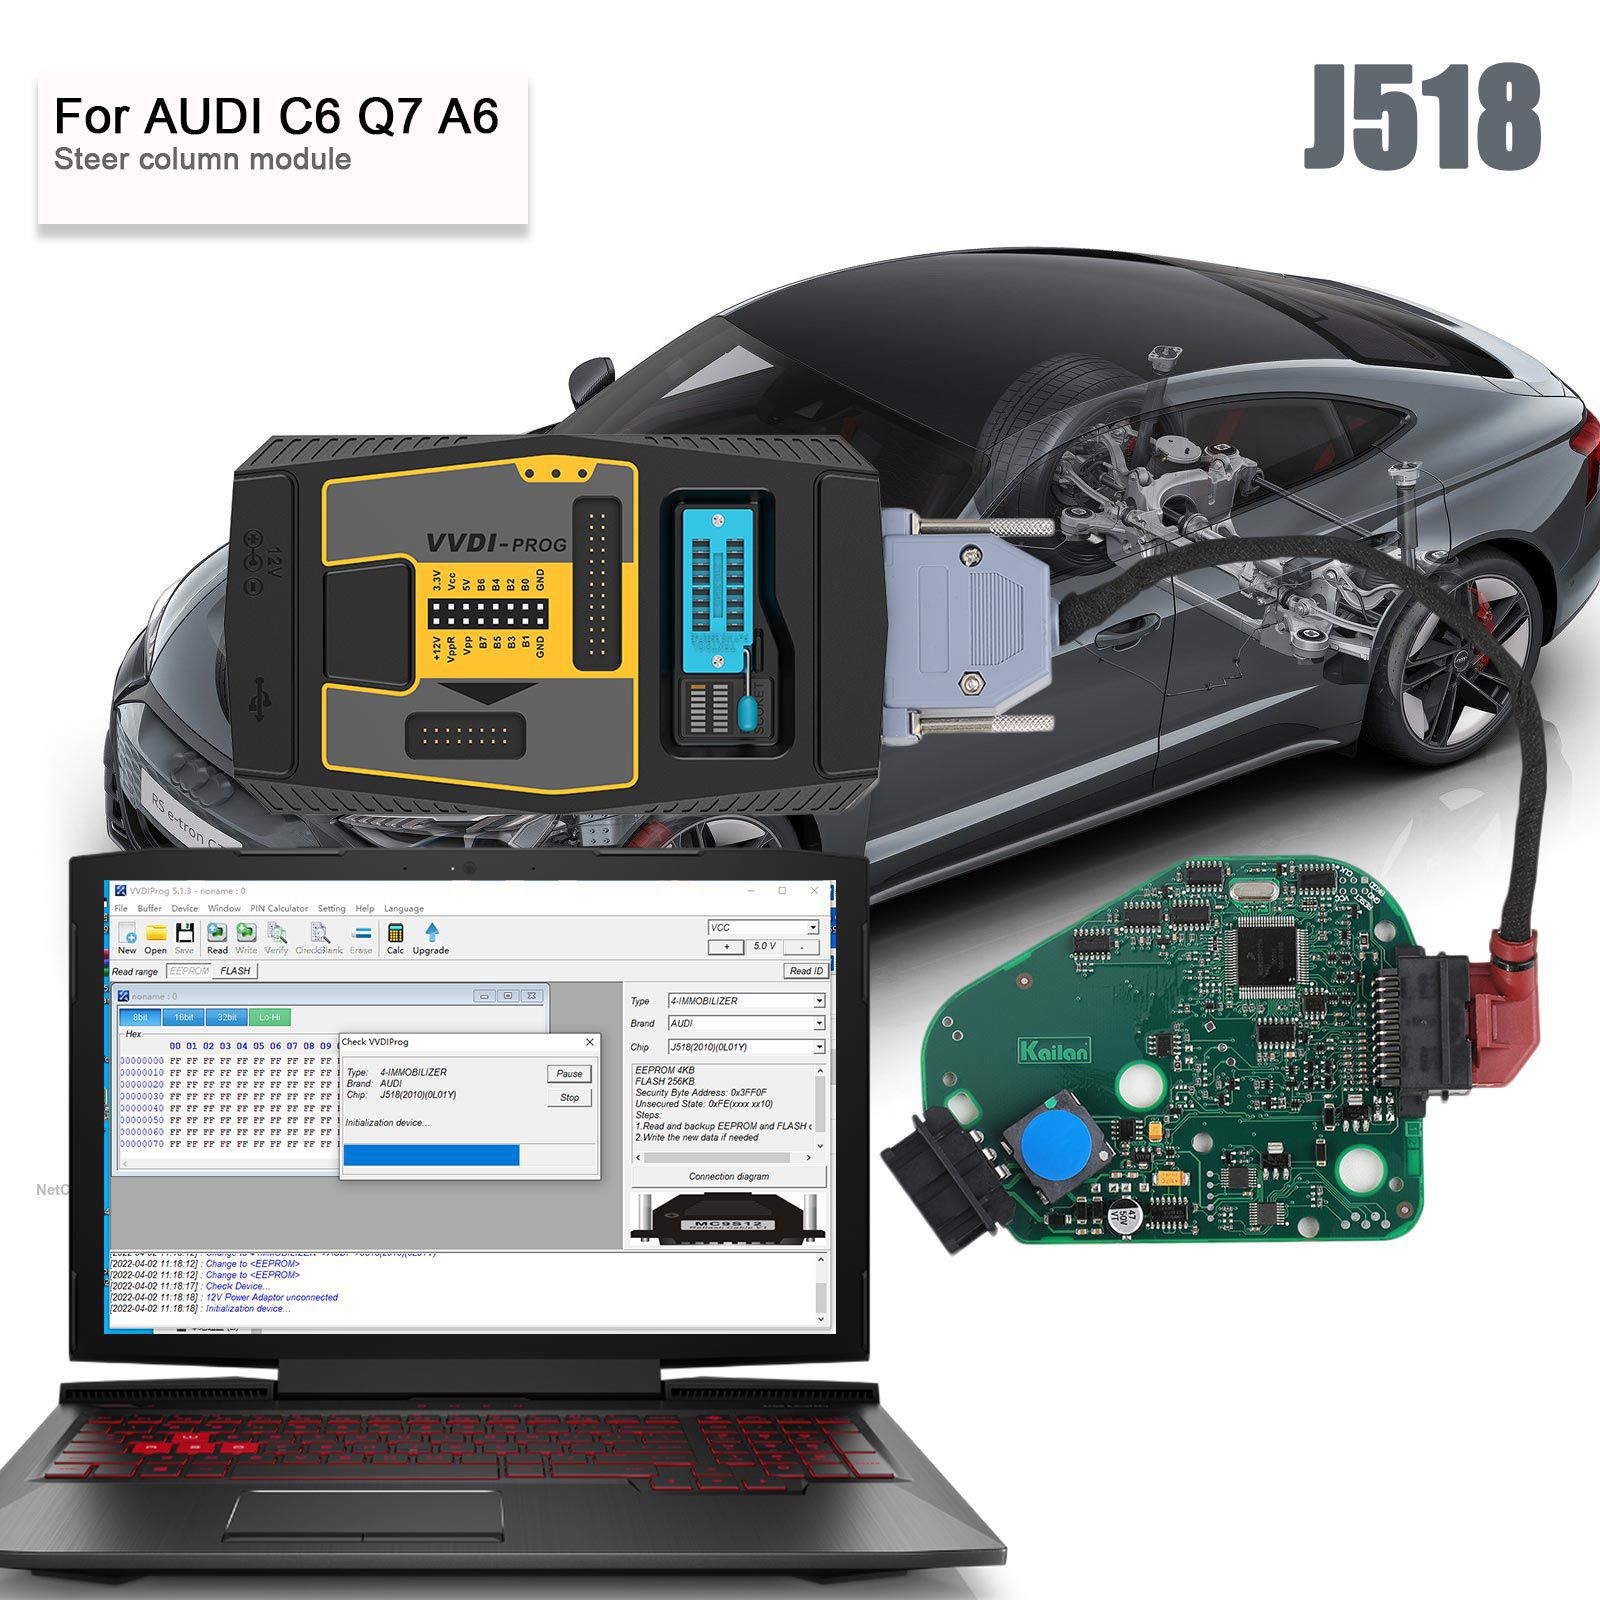 AUDI C6 Q7 A6 Emulador do módulo J518 ELV da coluna de direção com cabo de programação dedicado VVDI